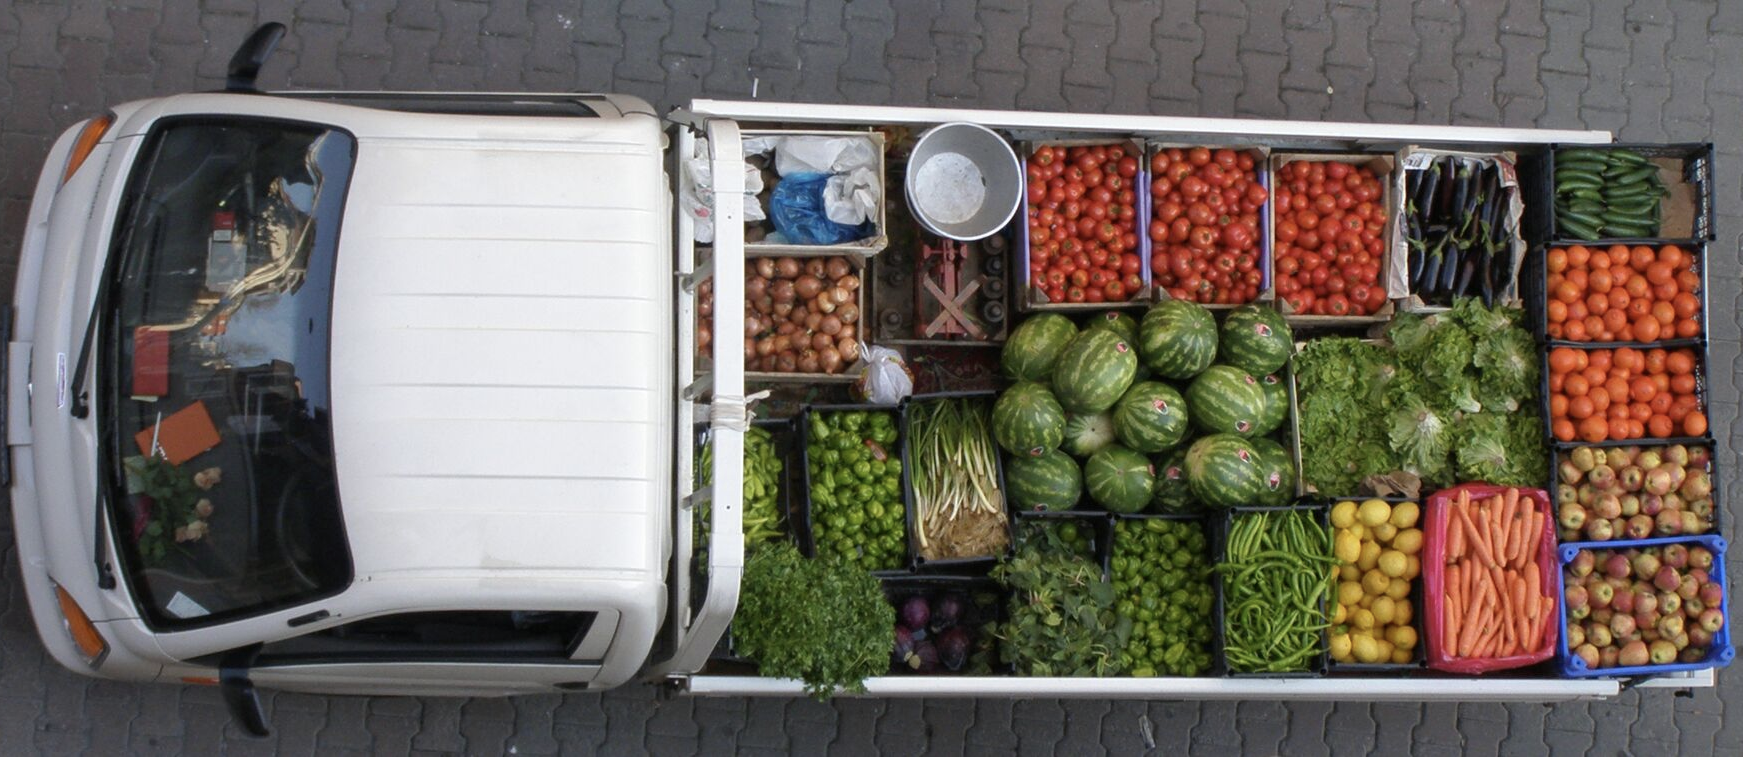 Реализация скоропортящихся пищевых. Транспортировка овощей и фруктов. Машина для перевозки фруктов и овощей. Грузовик с продуктами. Грузовик с овощами.